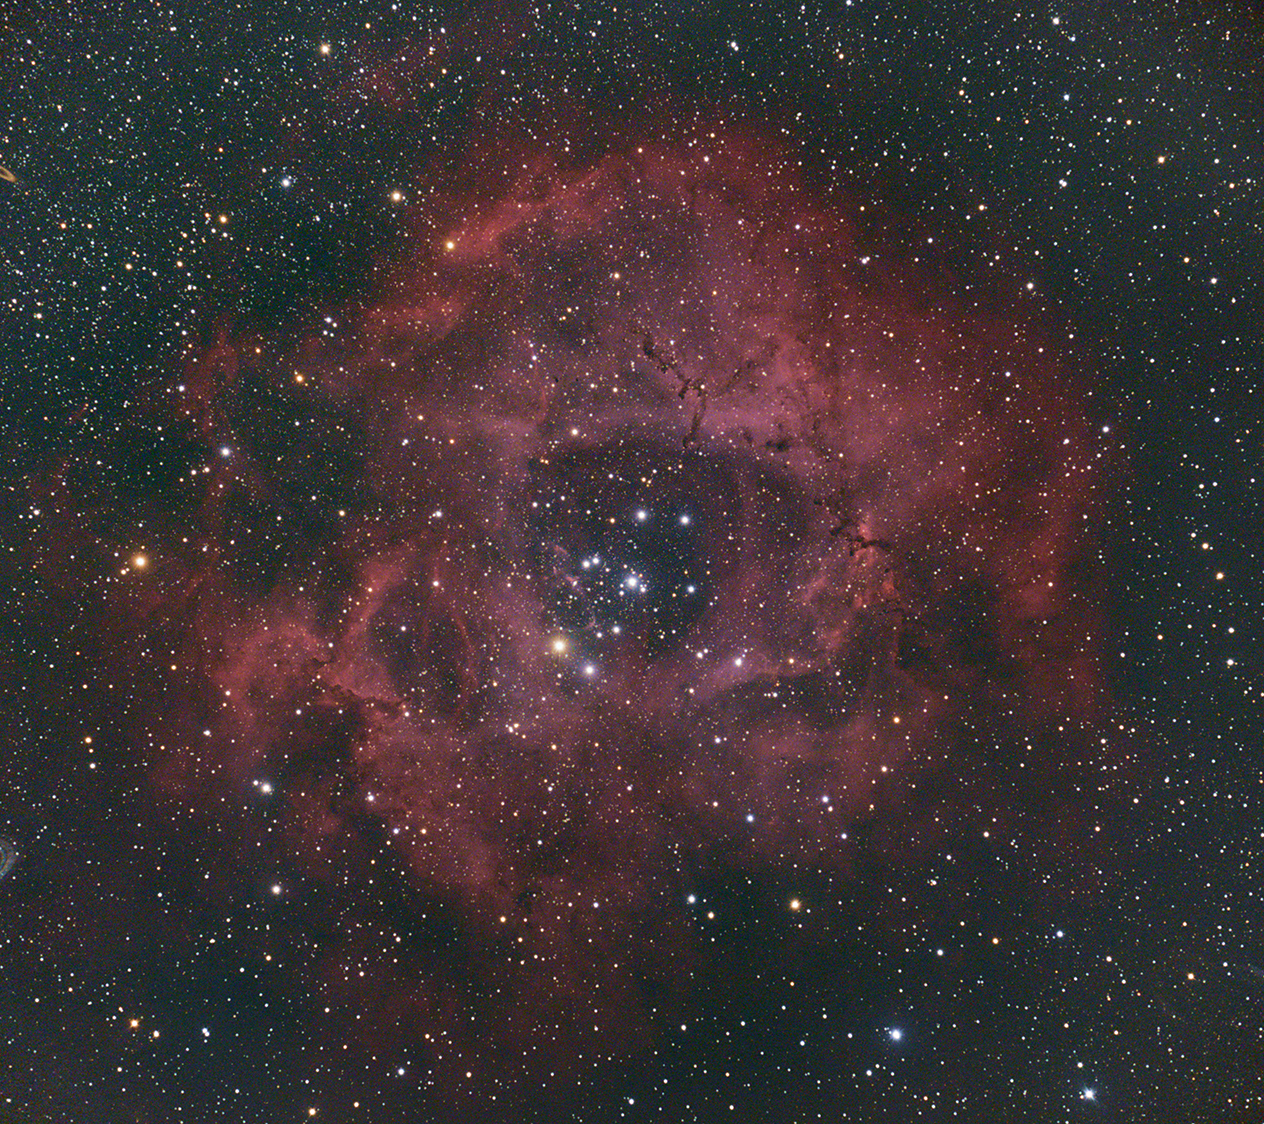 붉게 물든 장미성운(NGC2244)이 밤하늘을 화려하게 수놓고 있다. 

<사진정보>
망원경: TSA120mm 굴절망원경, 가대: NYSC 1m망원경, 카메라: Astro 6D, 촬영: 11 x 300sec, 총 관측시간: 55분, 촬영장소: 국립청소년우주센터 덕흥천문대, 관측 및 촬영: 국립청소년우주센터 우주활동부
